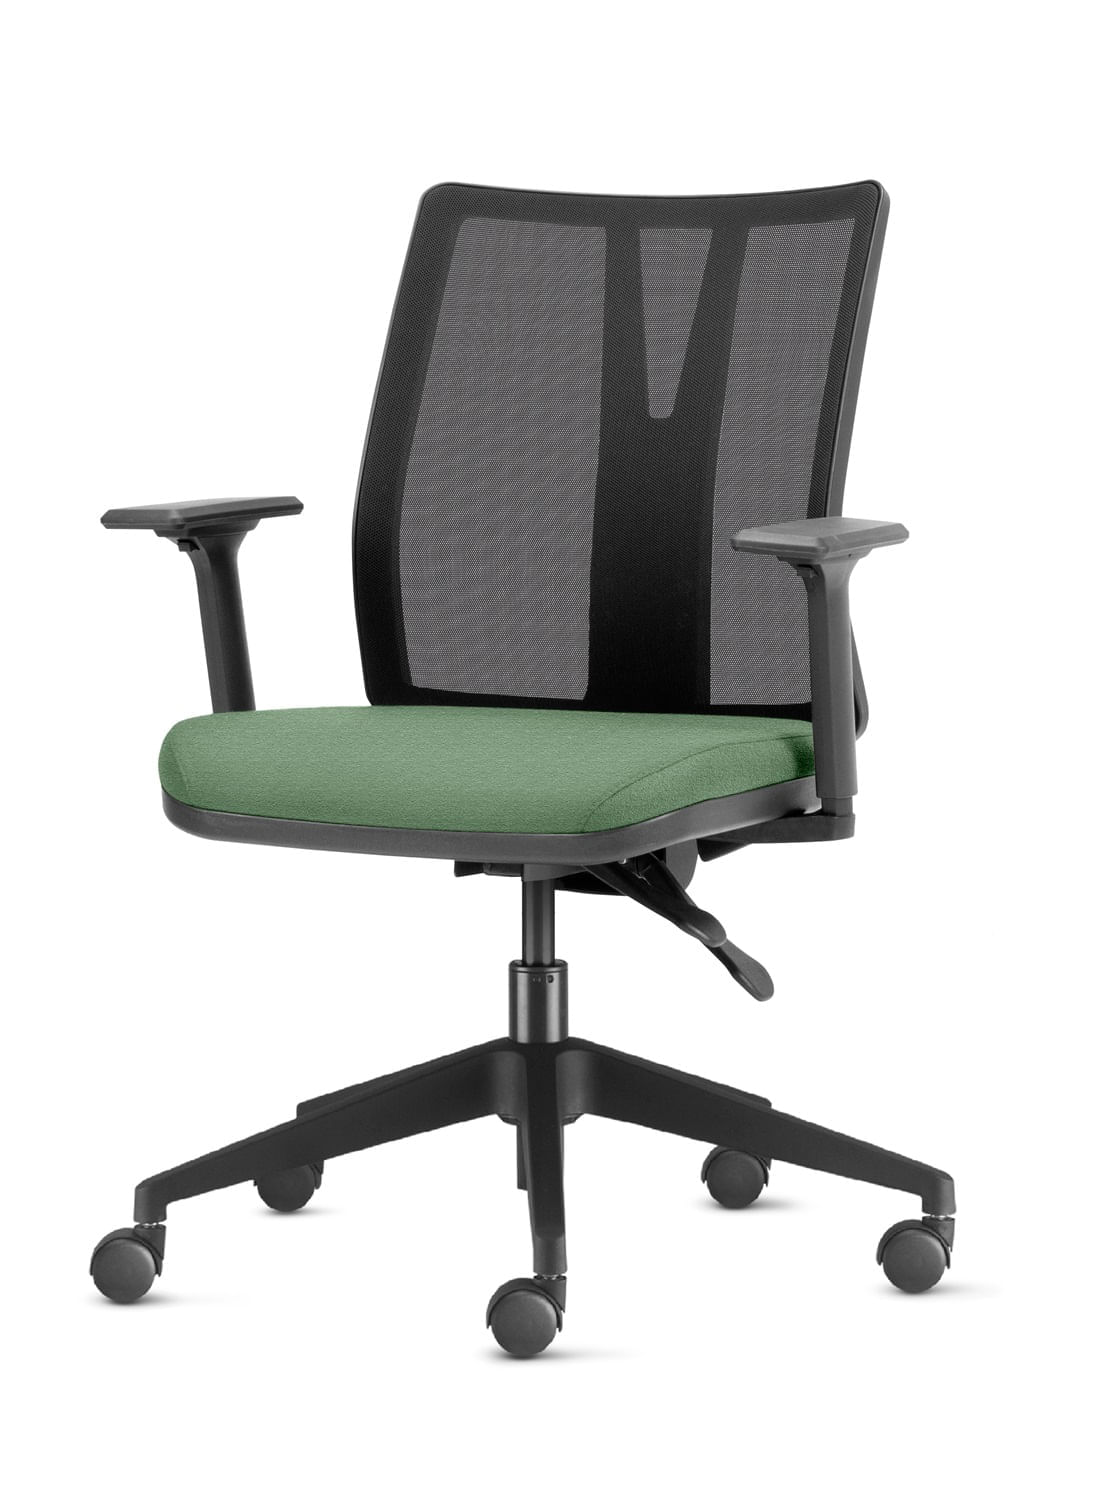 Cadeira Addit Assento Crepe Verde Menta com Base Piramidal em Nylon - 54117